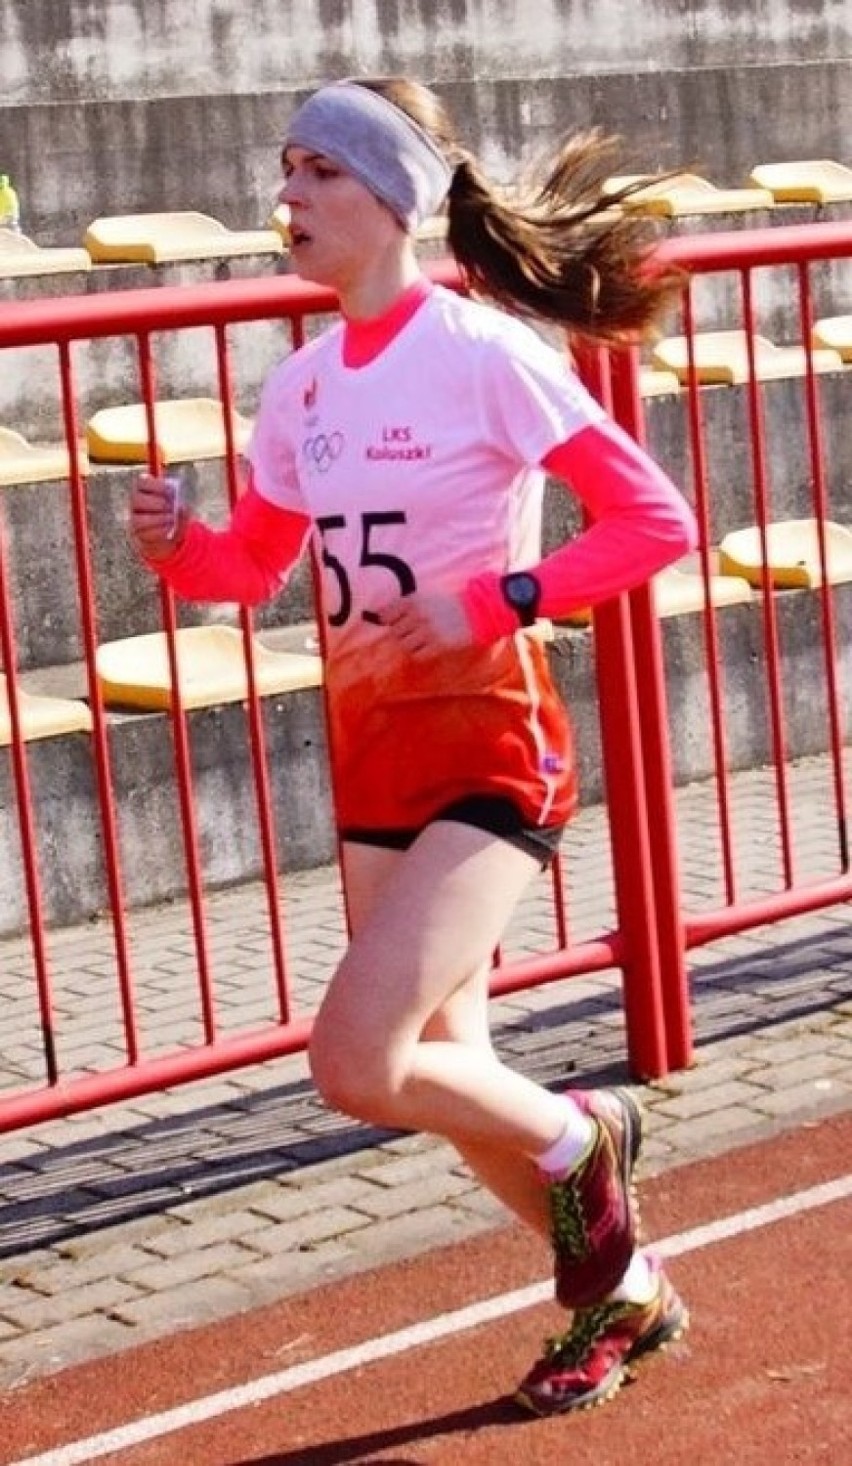 Biegacze z LKS Koluszki na mistrzostwach w biegach przełajowych. Tym razem bez medali